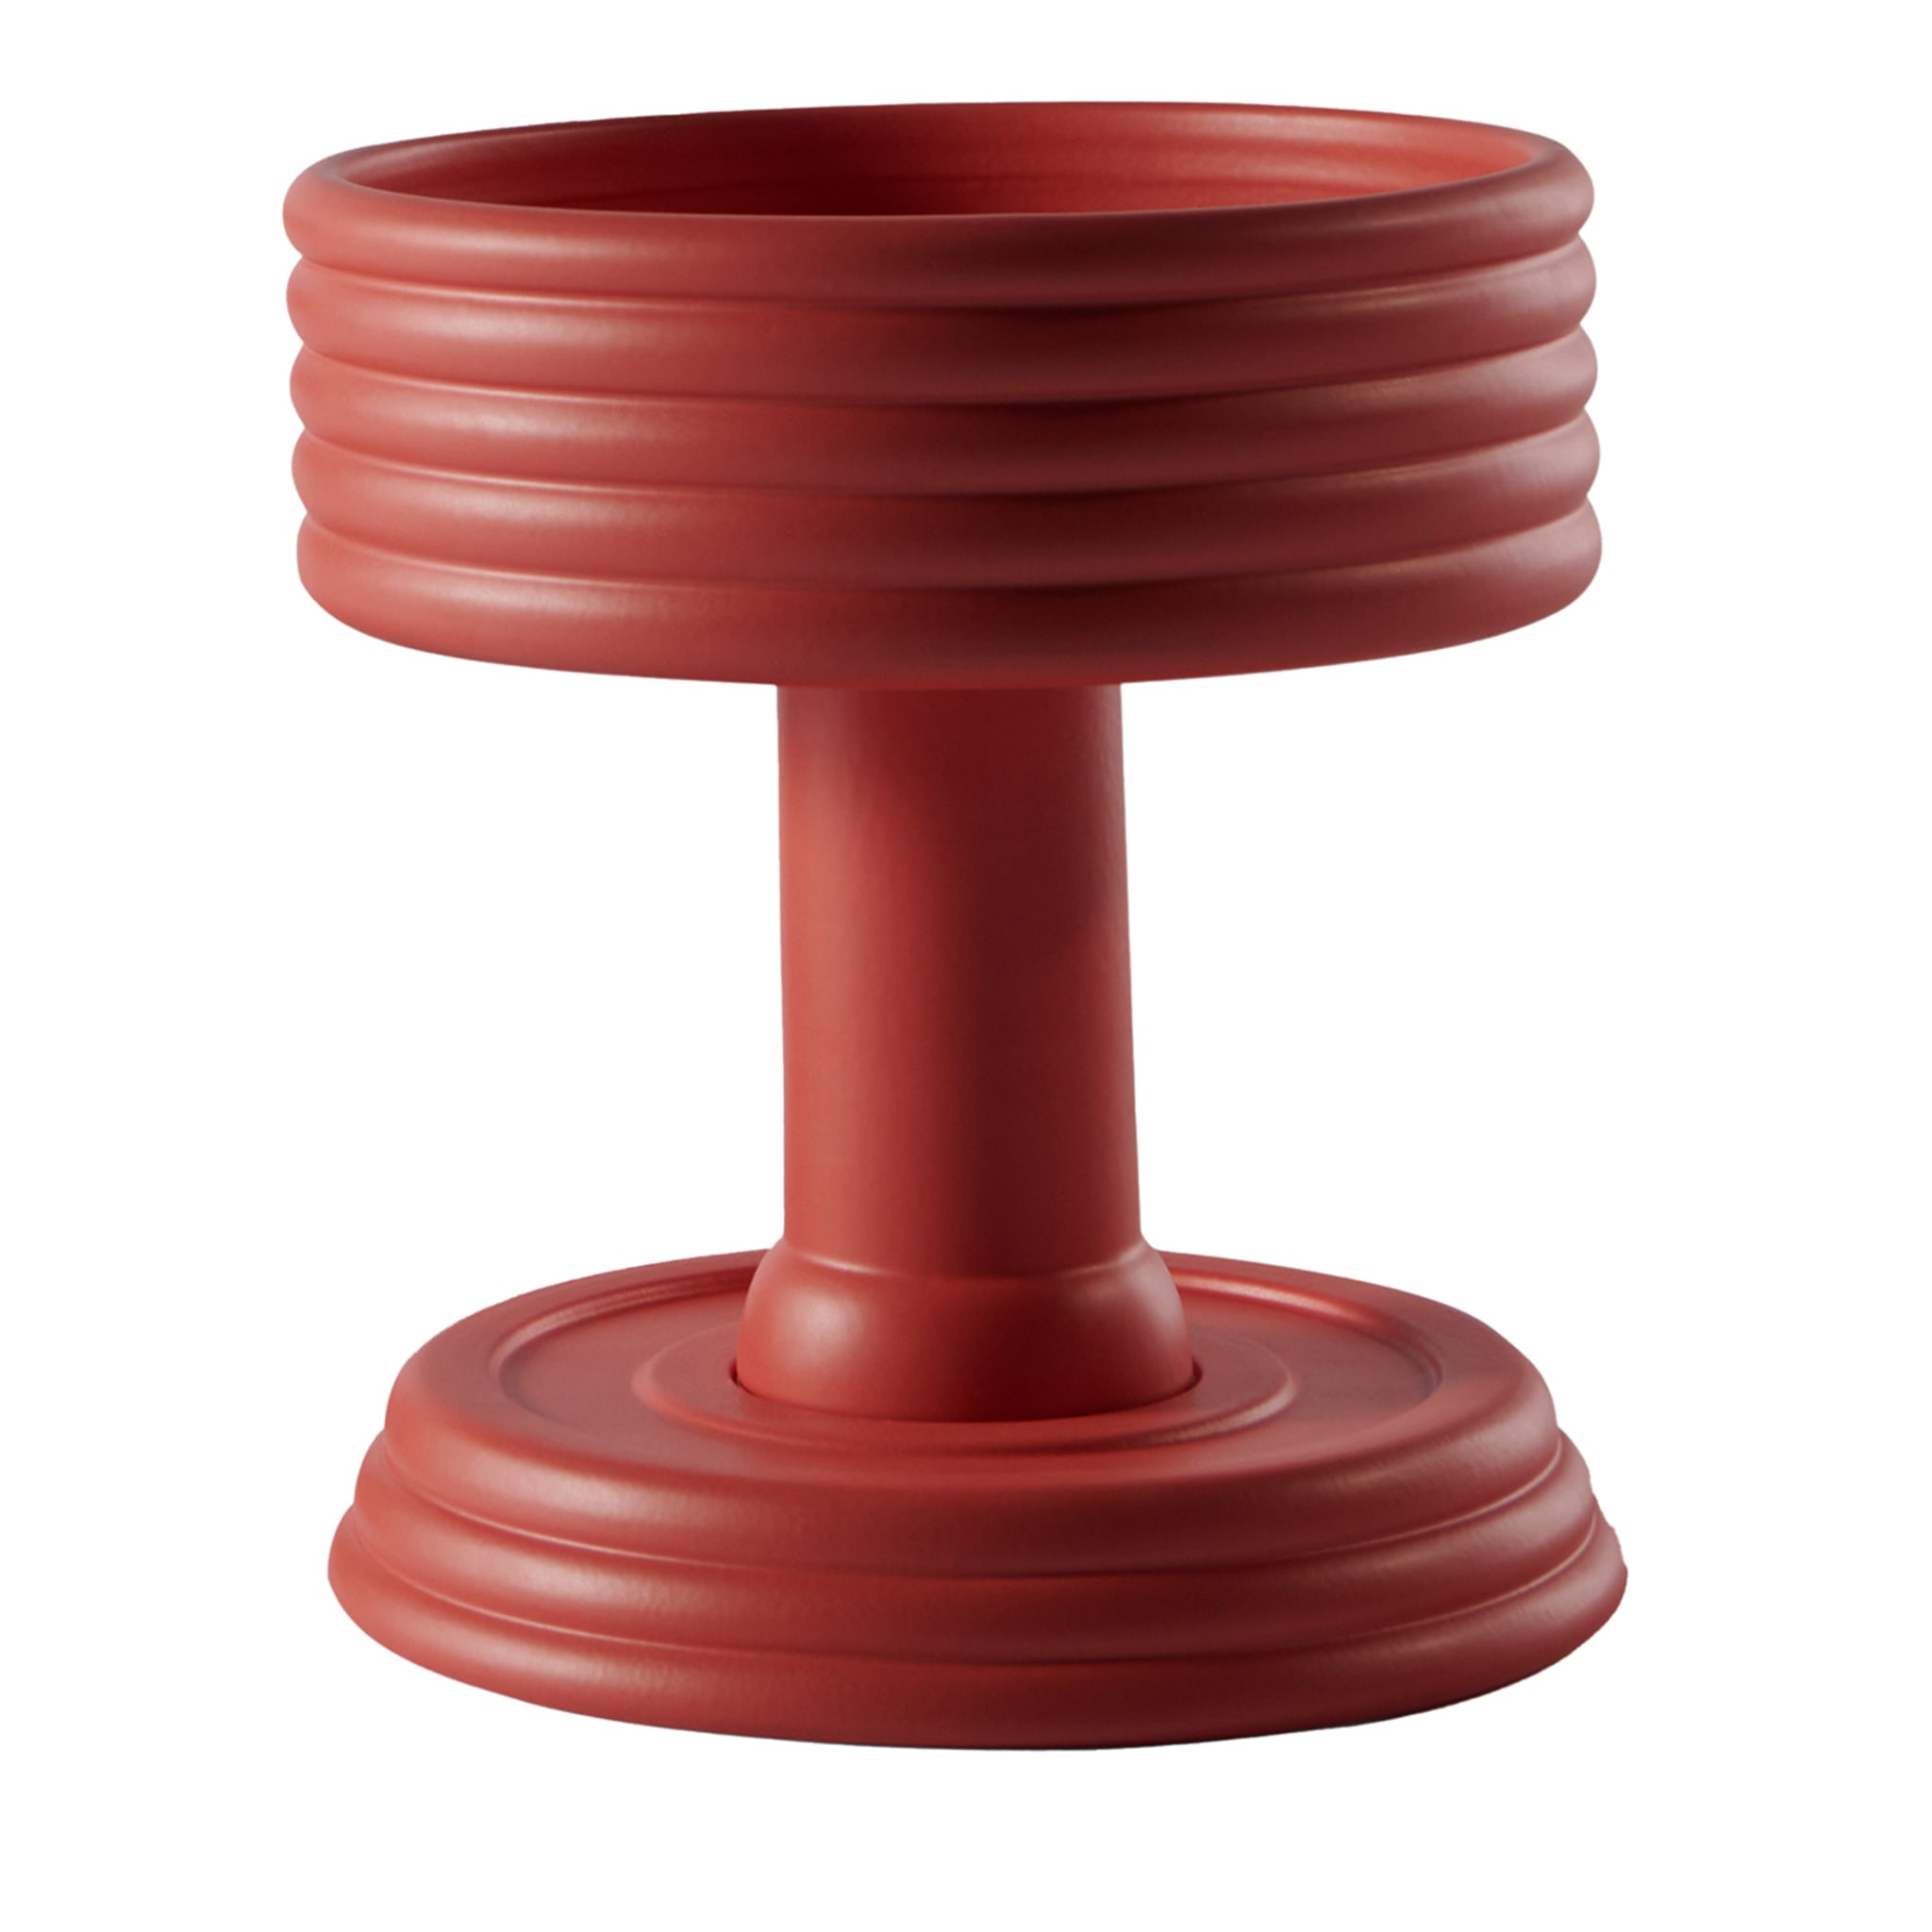 Triplex A Centre de table en céramique rouge Edition limitée par Andrea Branciforti - Vue principale